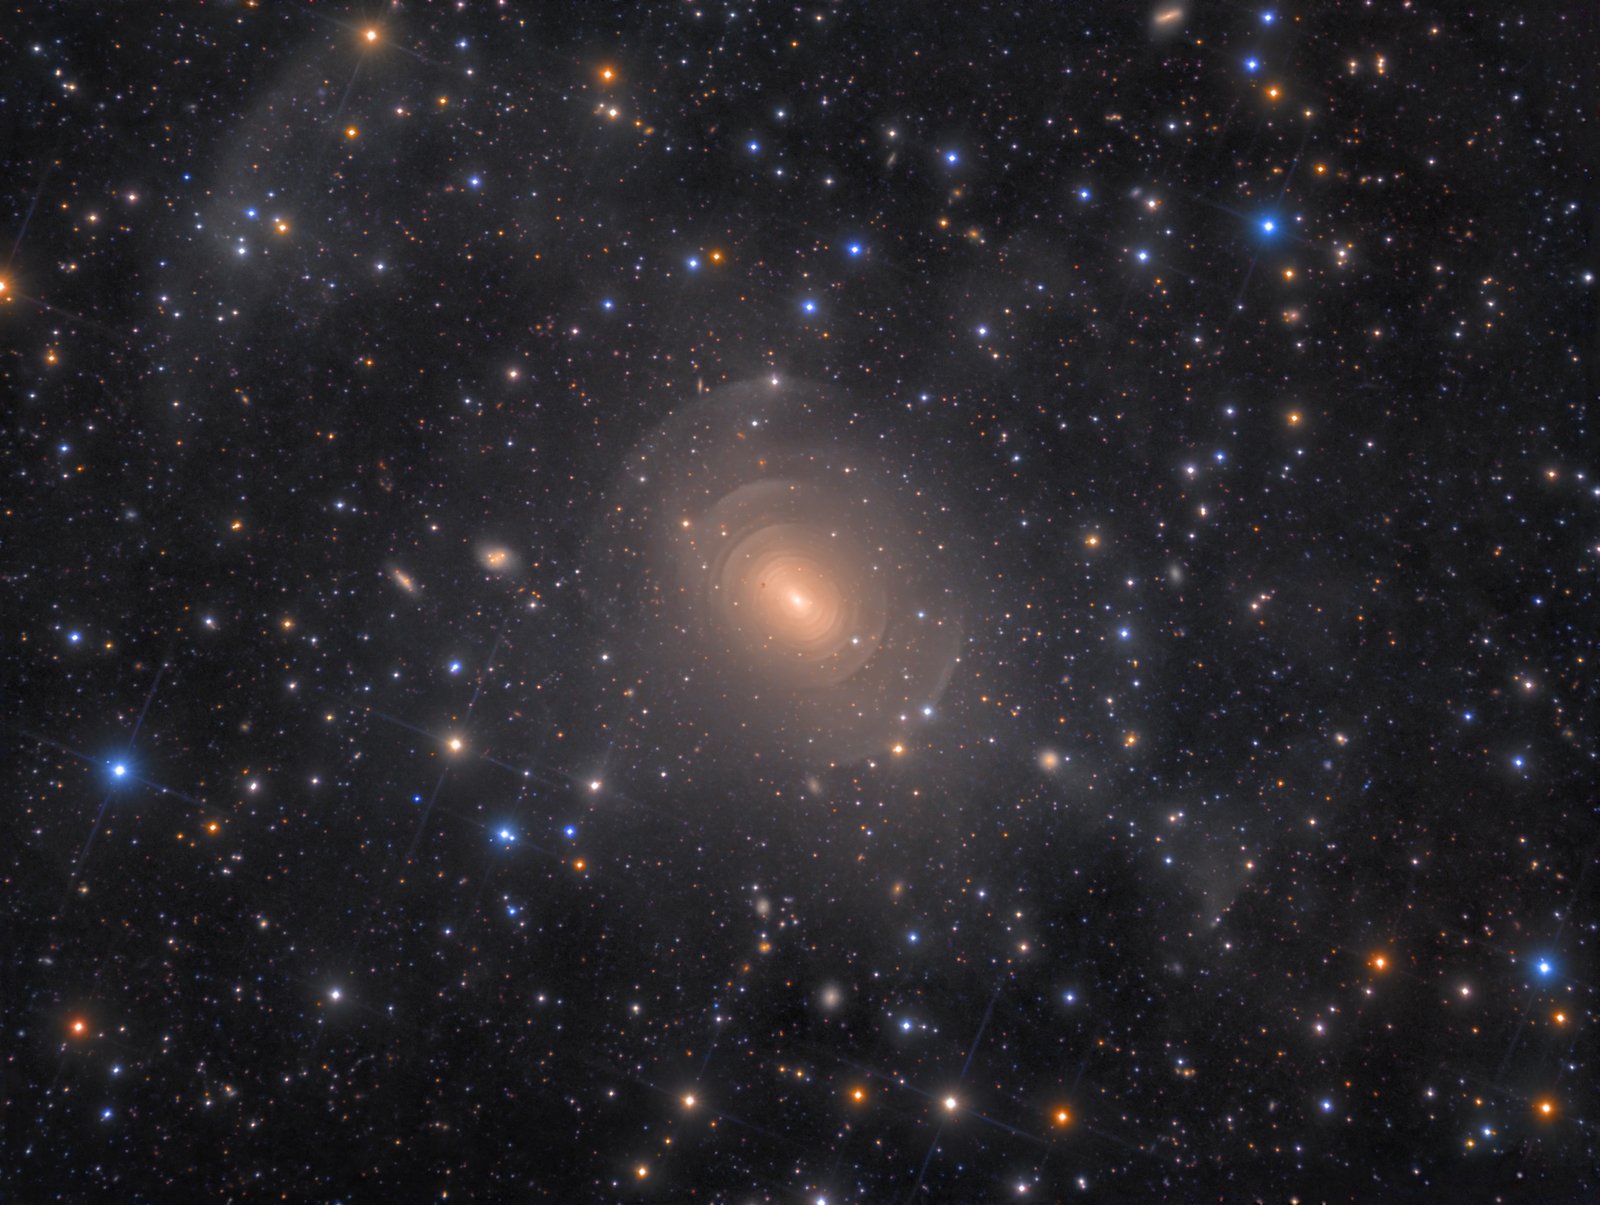 Shells-of-Elliptical-Galaxy-NGC-3923-in-Hydra-©-Rolf-Wahl-Olsen.jpg